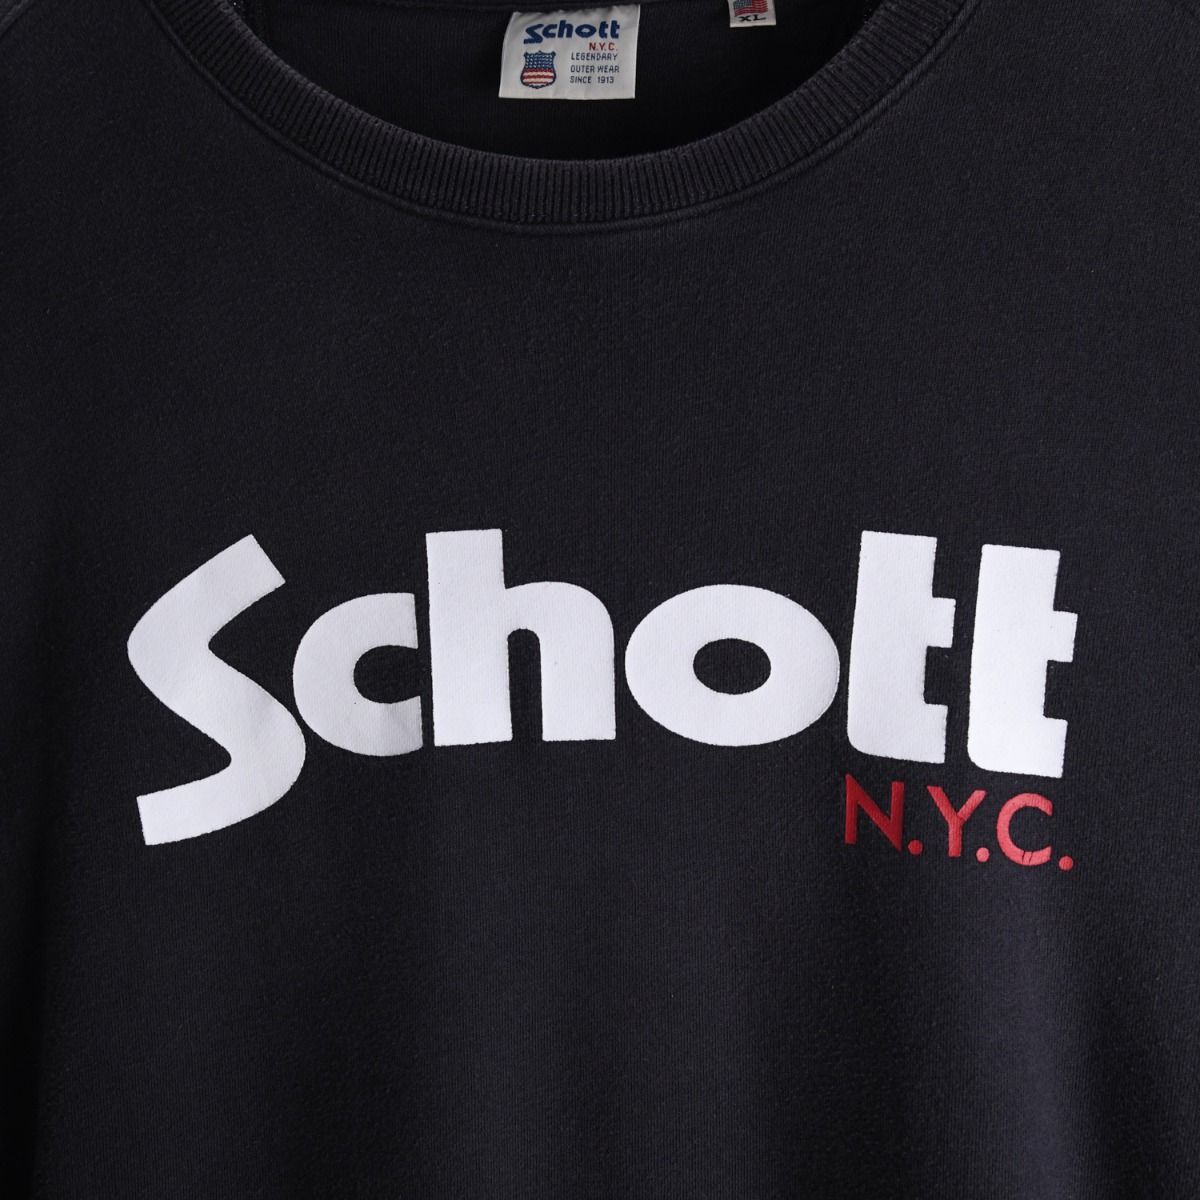 Schott 1990s Sweatshirt